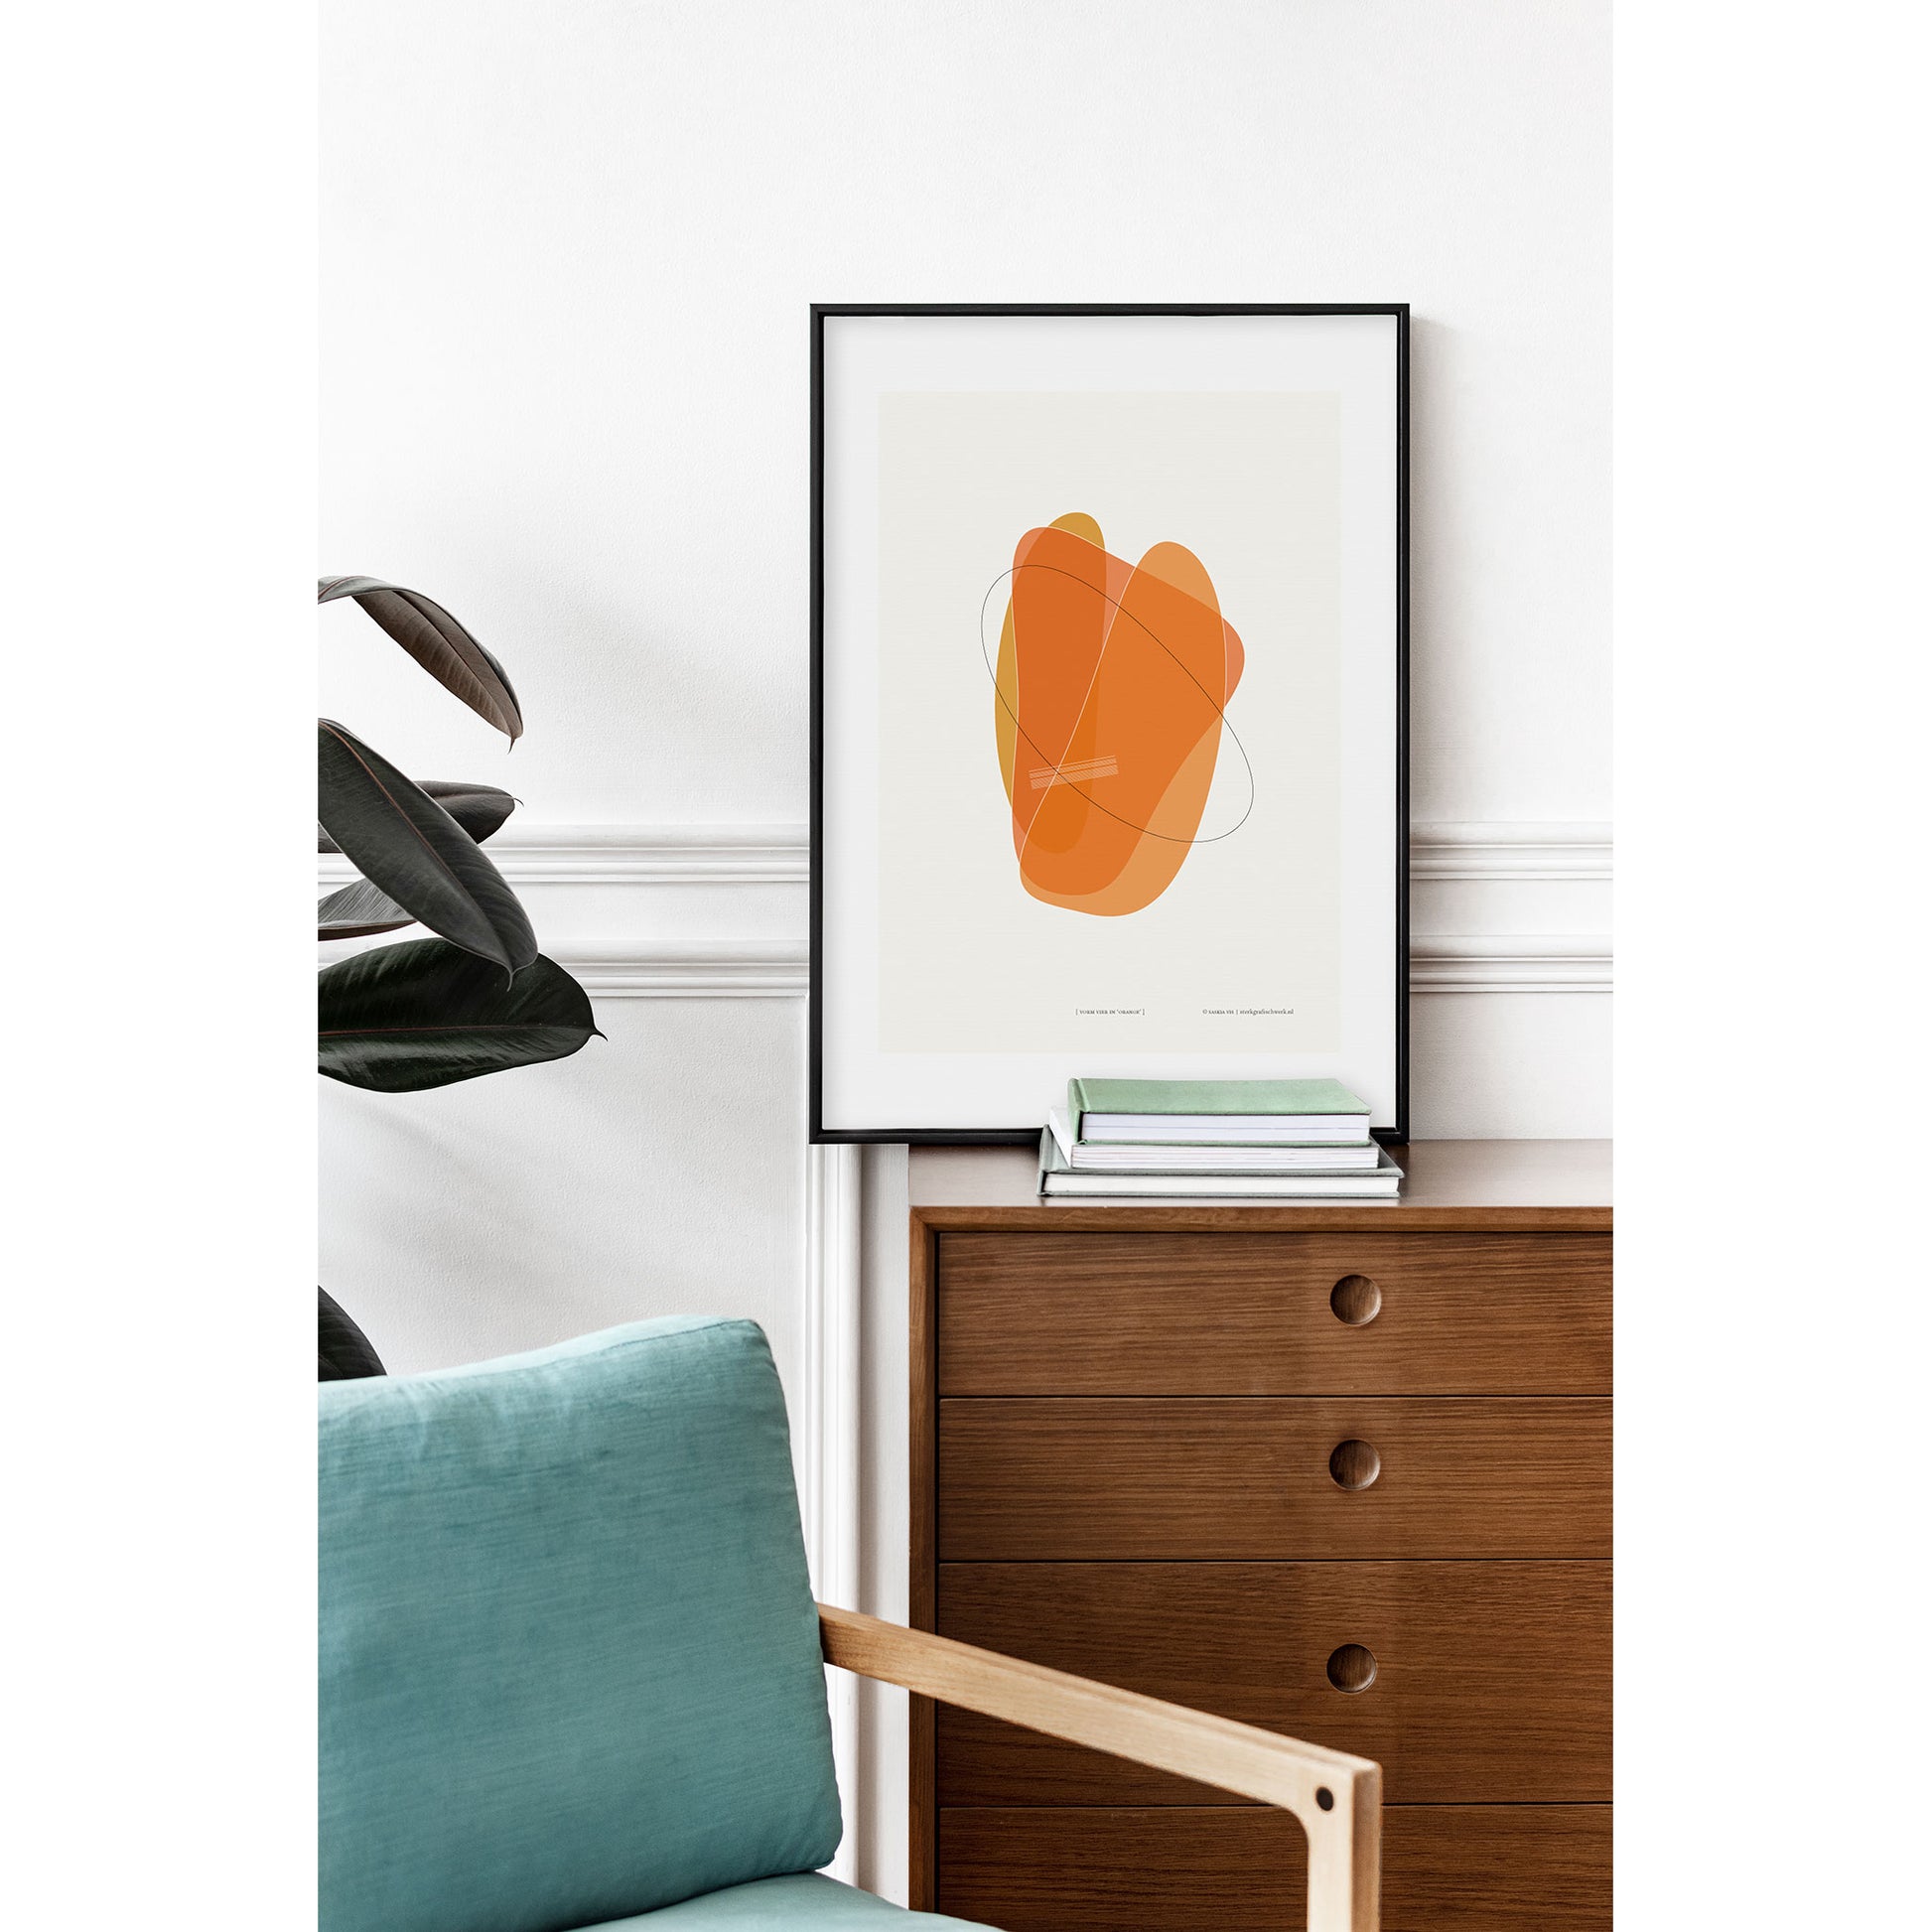 Productafbeelding poster "vorm vier in orange" 3de impressie foto ingelijst en staande op een ladekast in een interieur